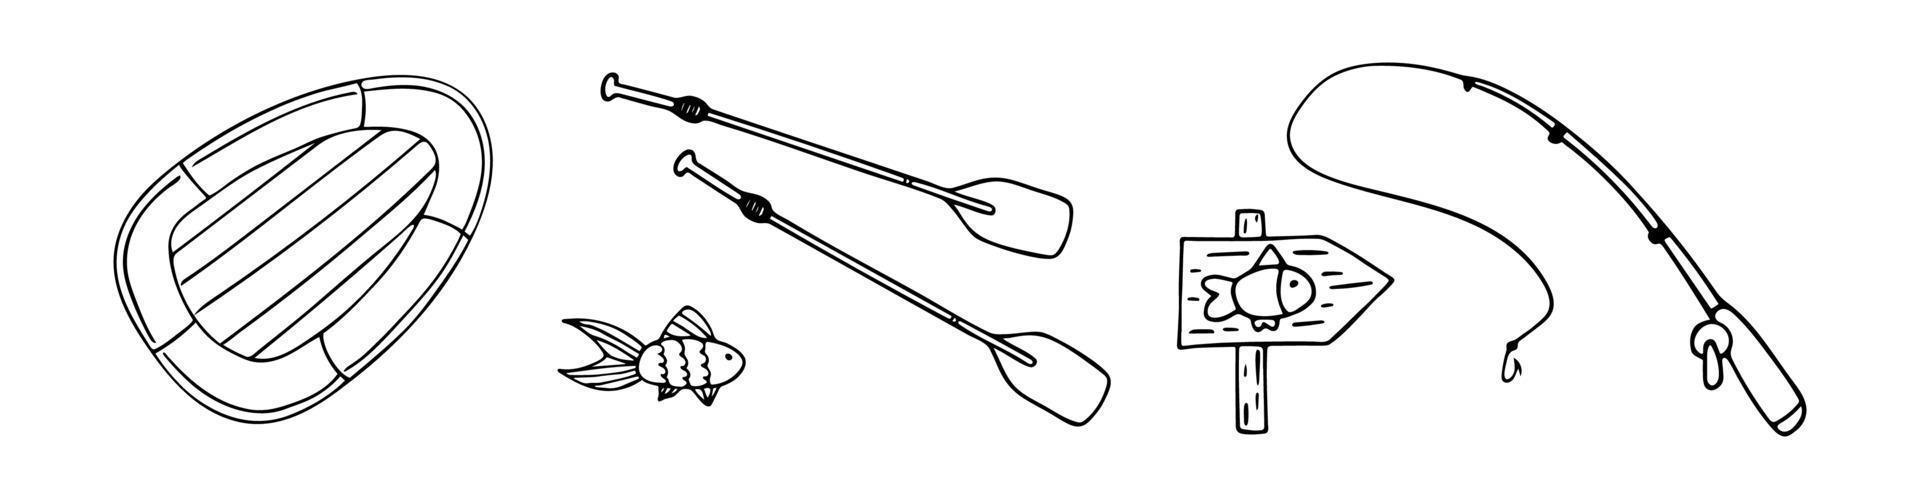 Vektor-Doodle-Set mit Angelelementen. Angelrute, Gummiboot und Angelwegweiser. Gliederung. vektor